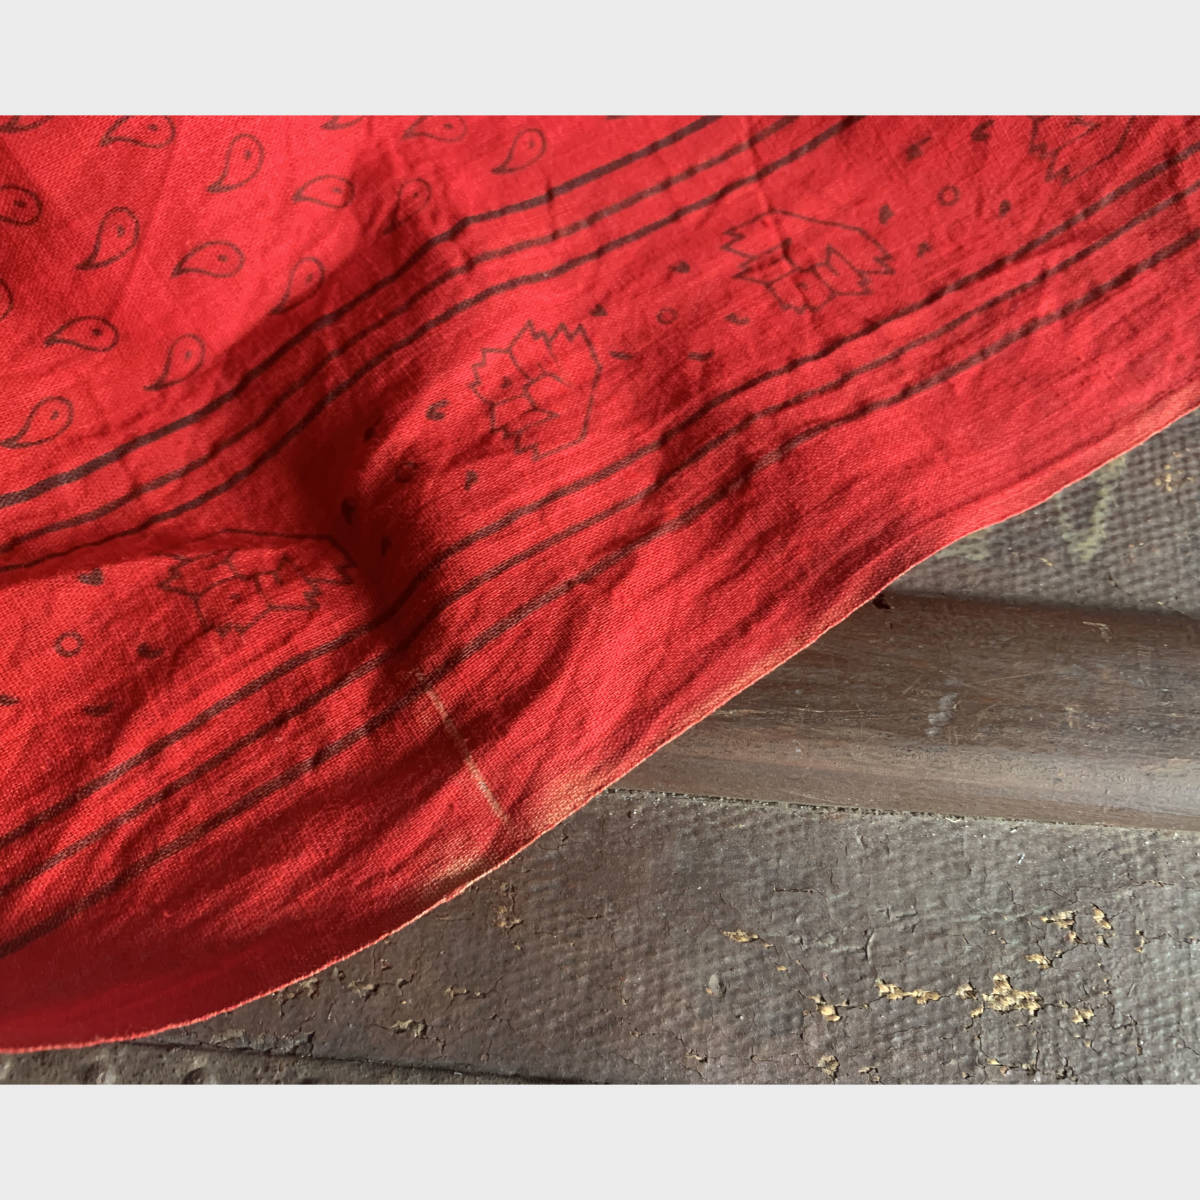 フランス 1900s ストール バンダナ 3枚繋ぎ 2m マキニョン 羊飼い スカーフ 赤 シャツ ジャケット ヴィンテージ 服飾 骨董 アンティーク 1